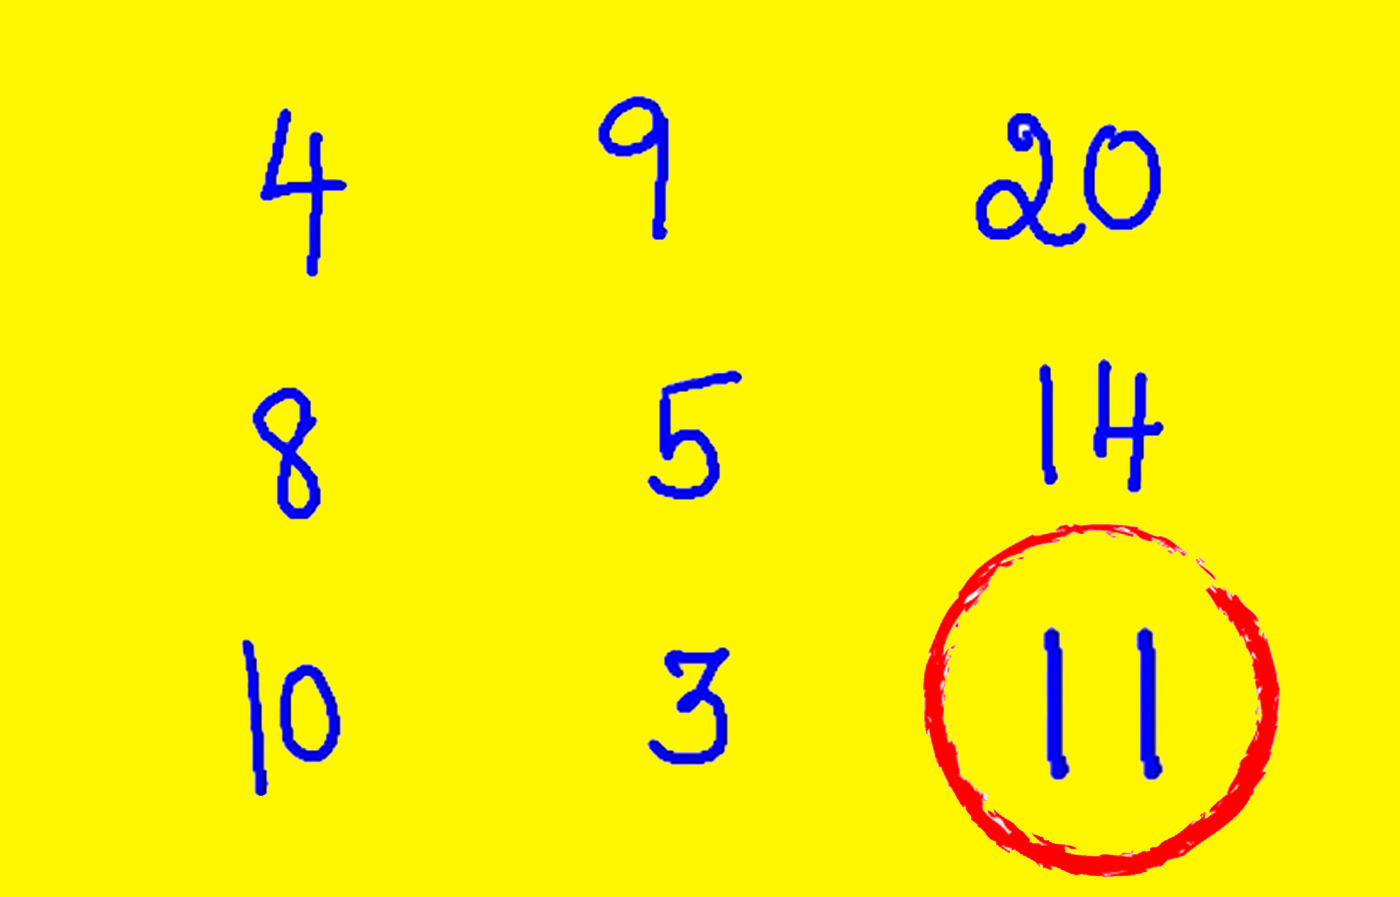 TEST IQ | Ce număr urmează în această serie 4,9,20,8,5,14,10,3?